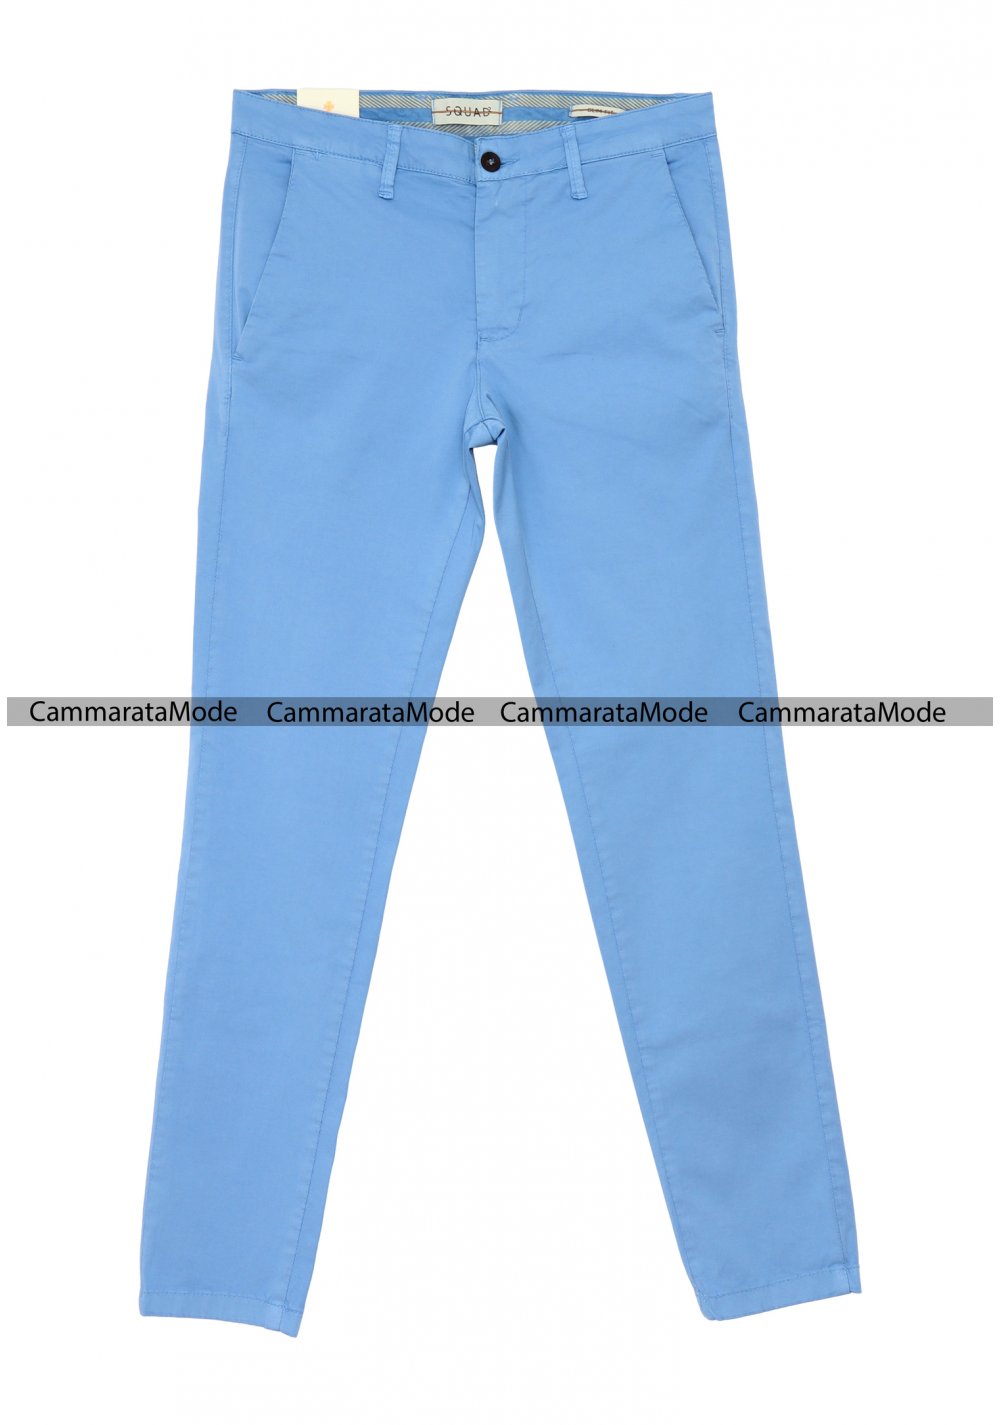 SQUAD2 uomo CUBA - Pantalone celeste tasche america, slim fit cotone elastico